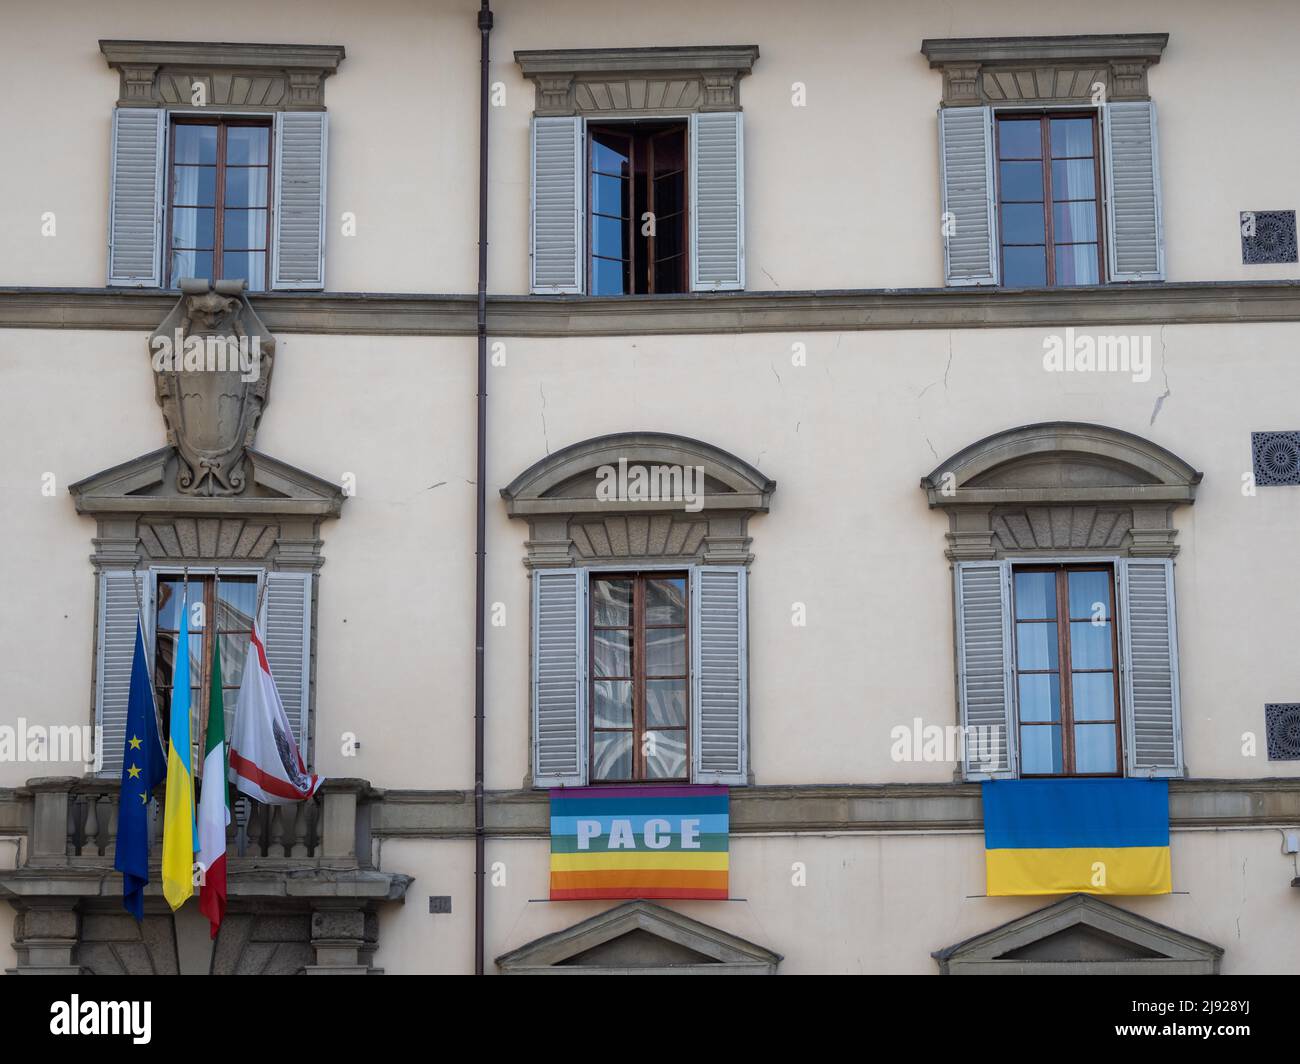 Ambassade de paix, façade avec drapeau de l'Ukraine et drapeau avec inscription Pace, Florence, Toscane, Italie Banque D'Images